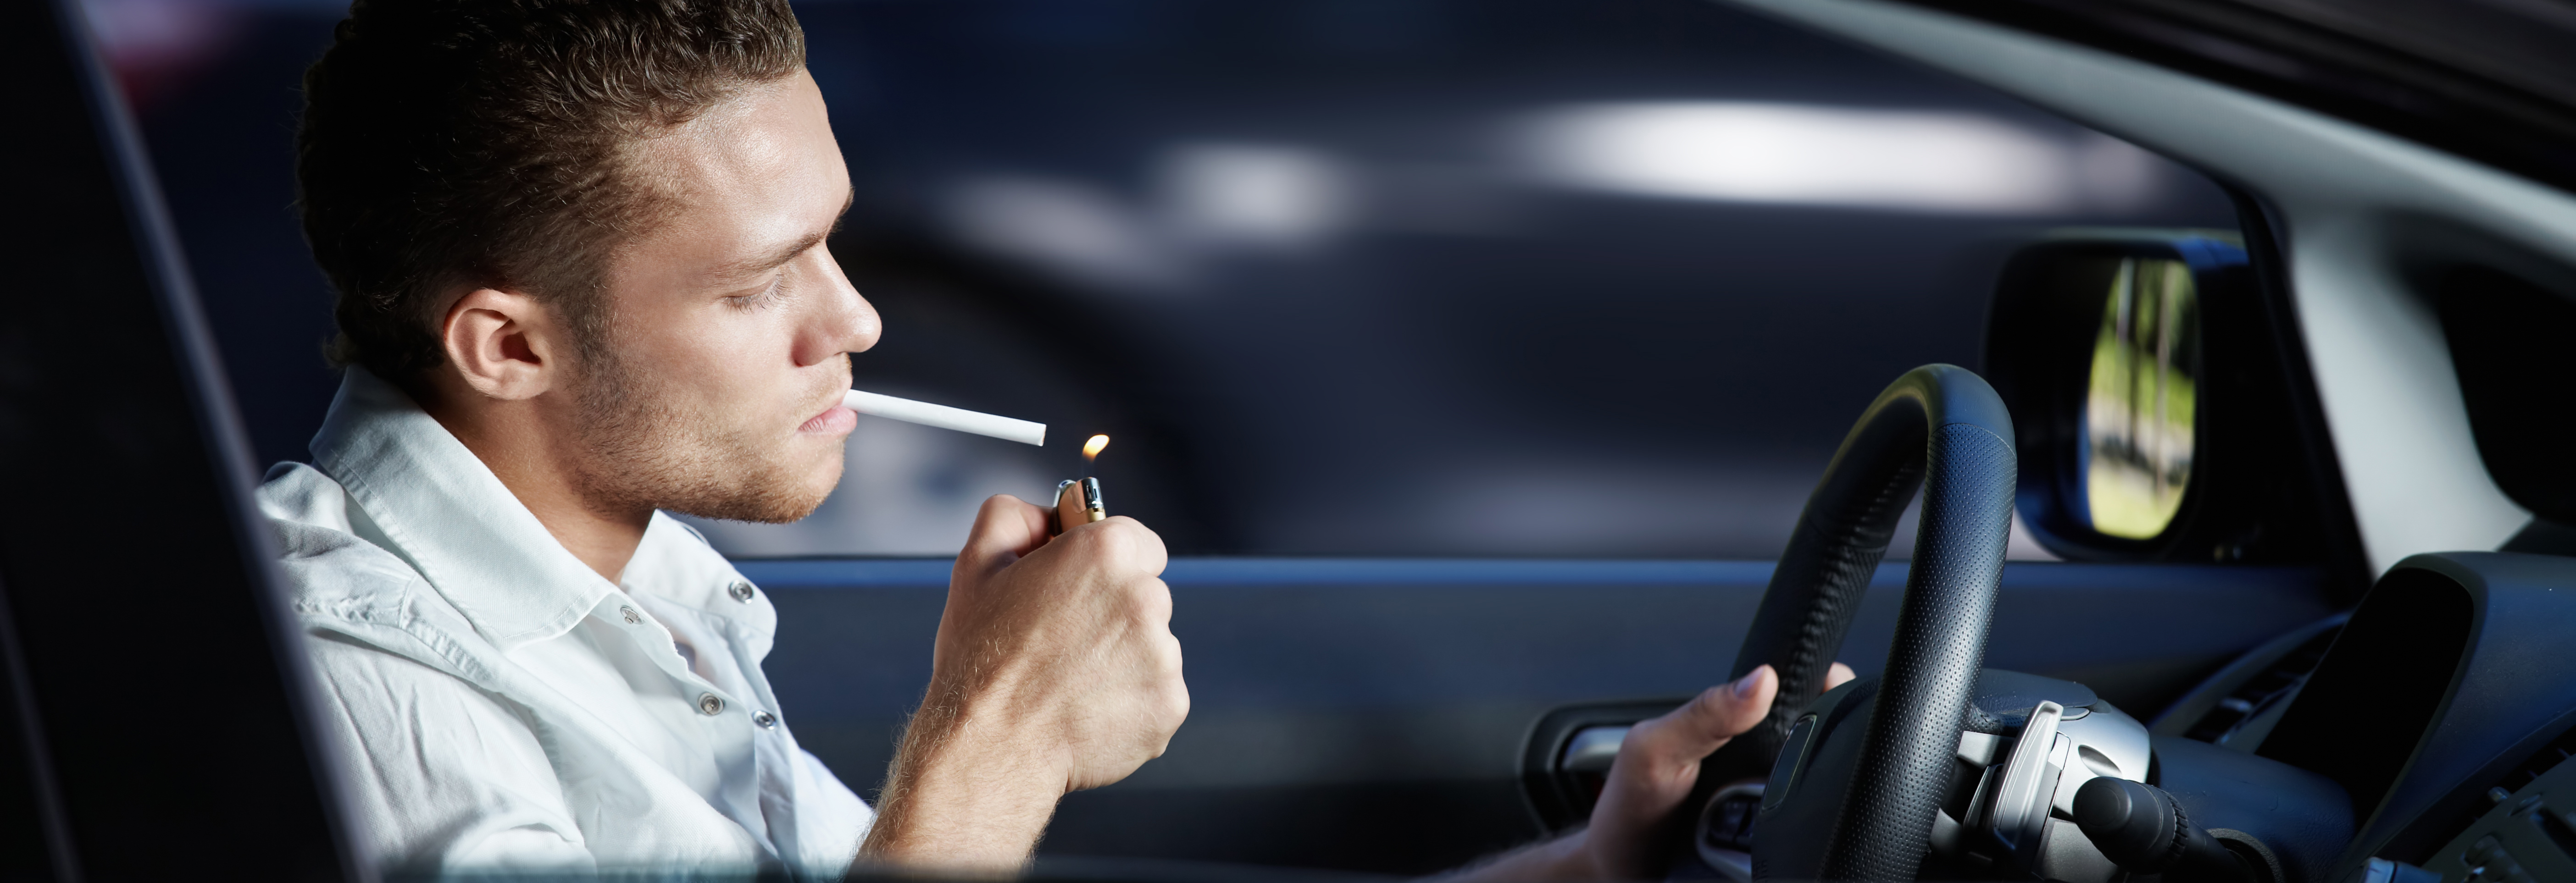 Fumar, un riesgo también al volante